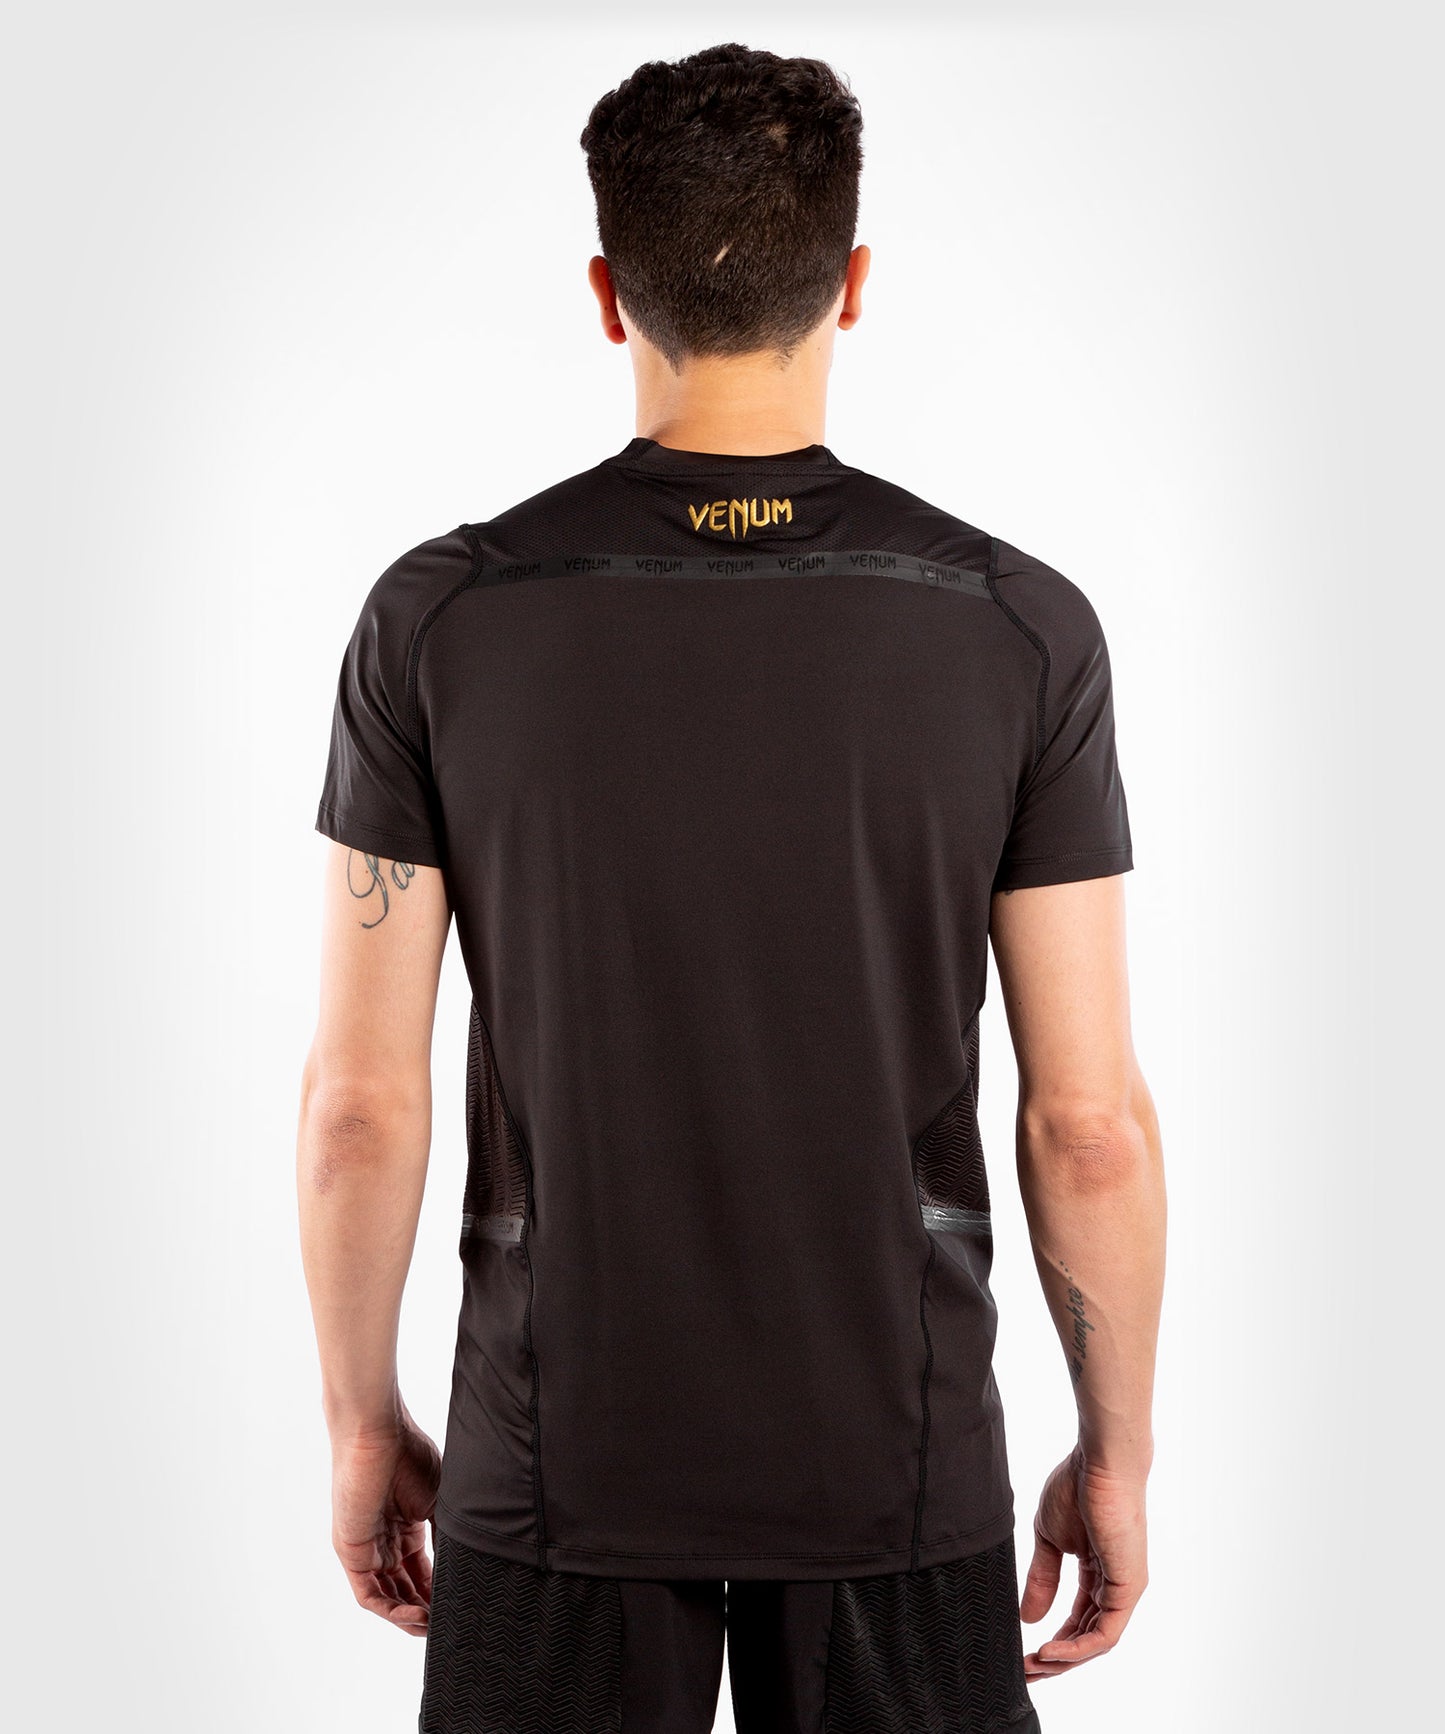 Camiseta Venum G-Fit Dry-Tech - Negro/Oro